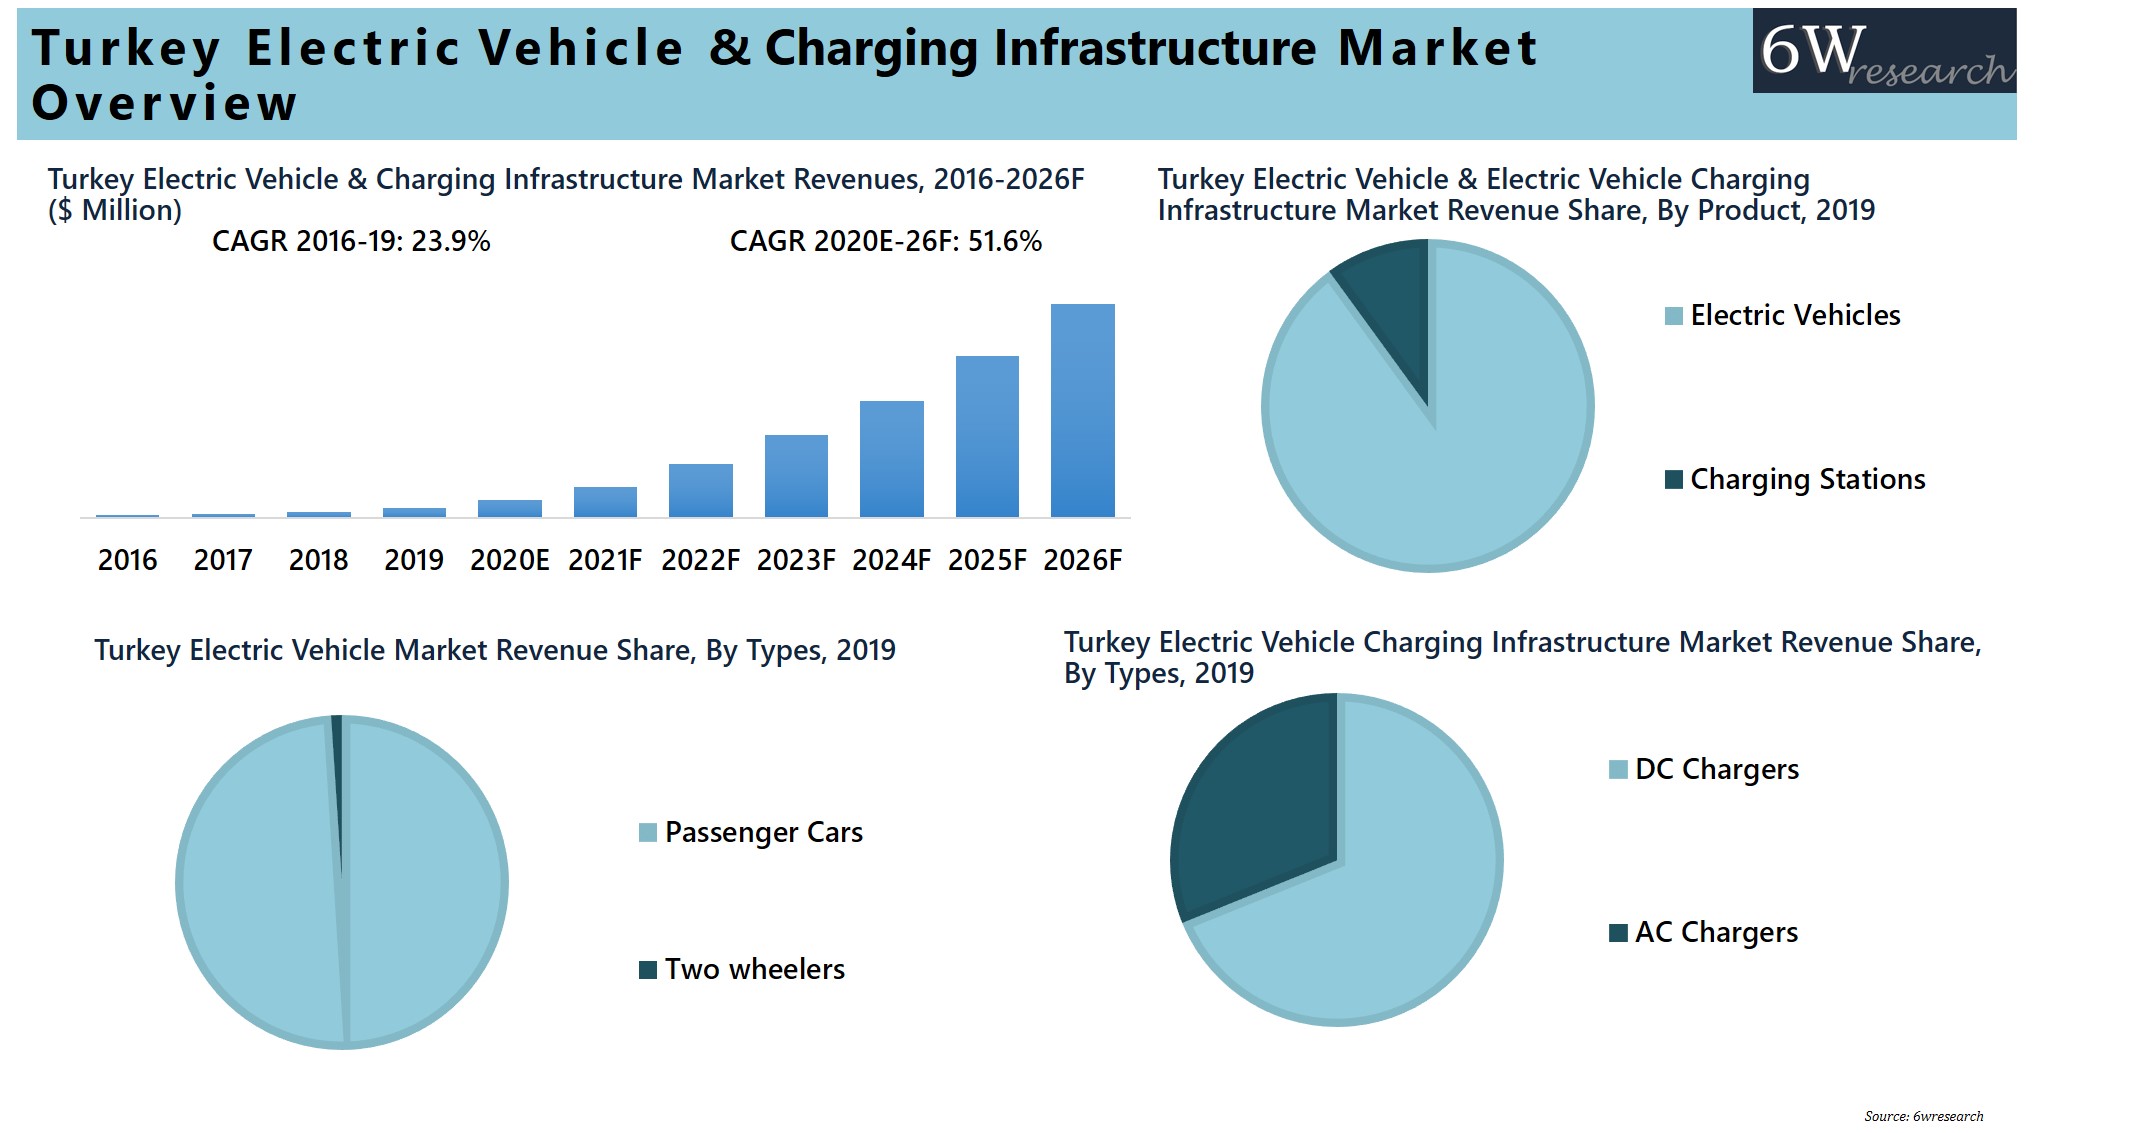 Turkey EV & Charging Infrastructure Market Analysis